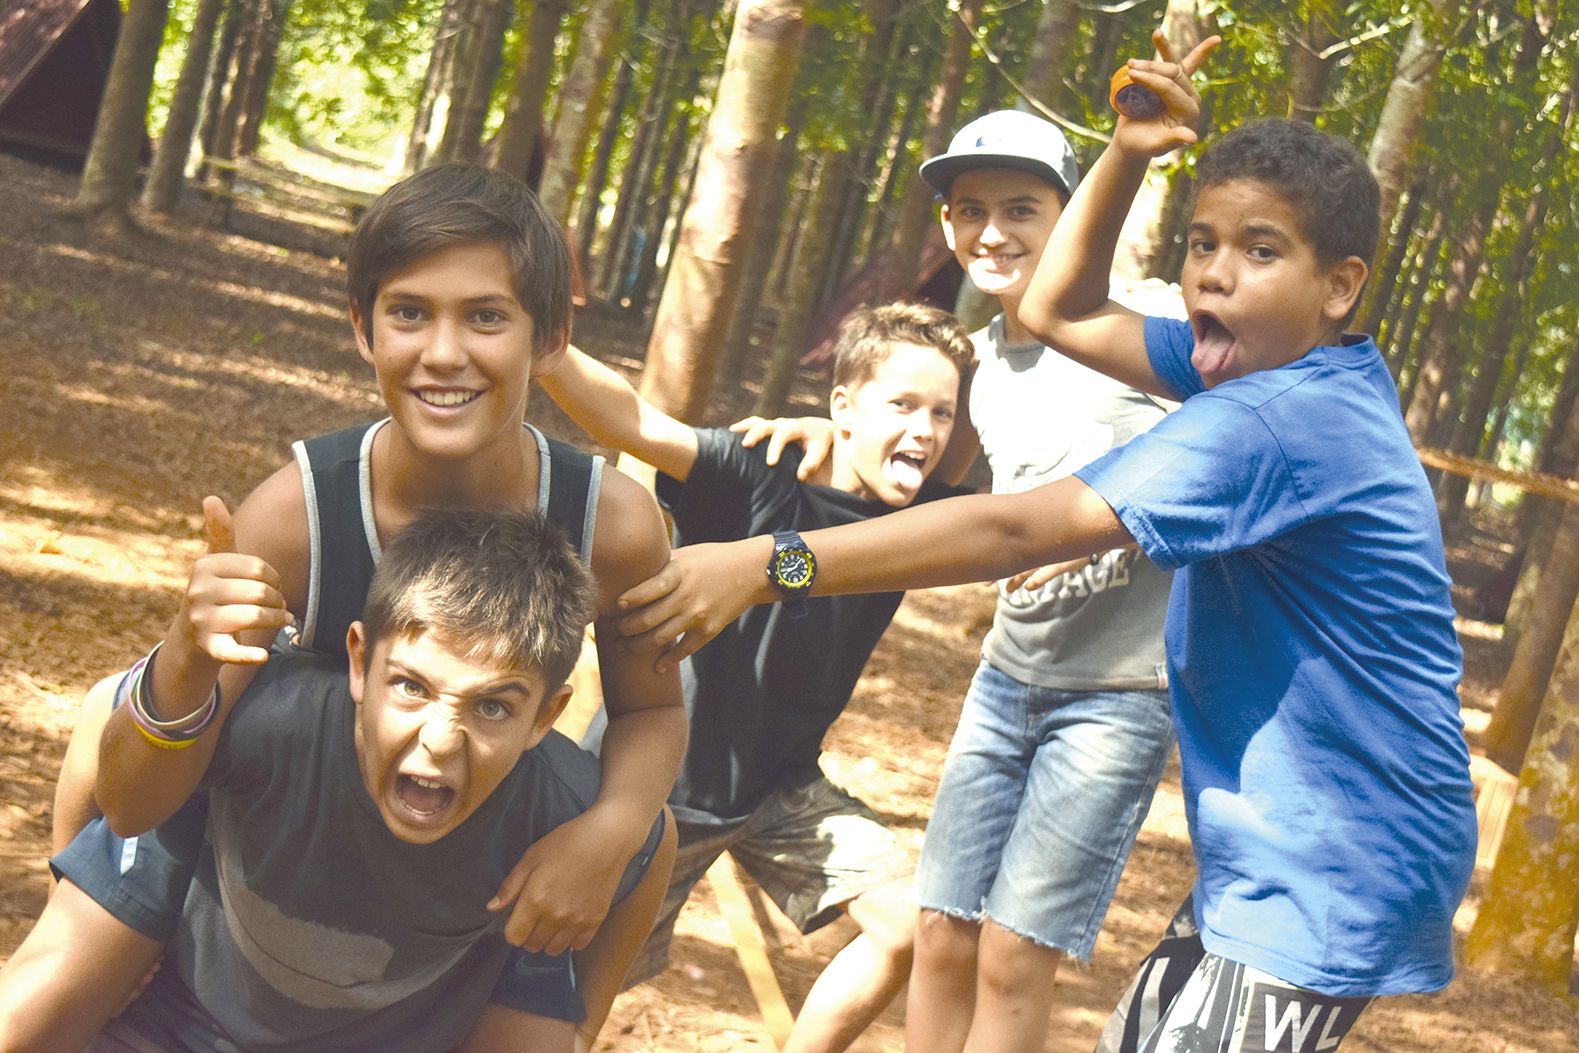 Nolann, Yvan, Tidiane, Maxime et les autres aiment participer aux camps de vacances d’Escal’Aventure pour la diversité des activités, malgré l’interdiction formelle de se connecter aux téléphones portables et autres écrans.